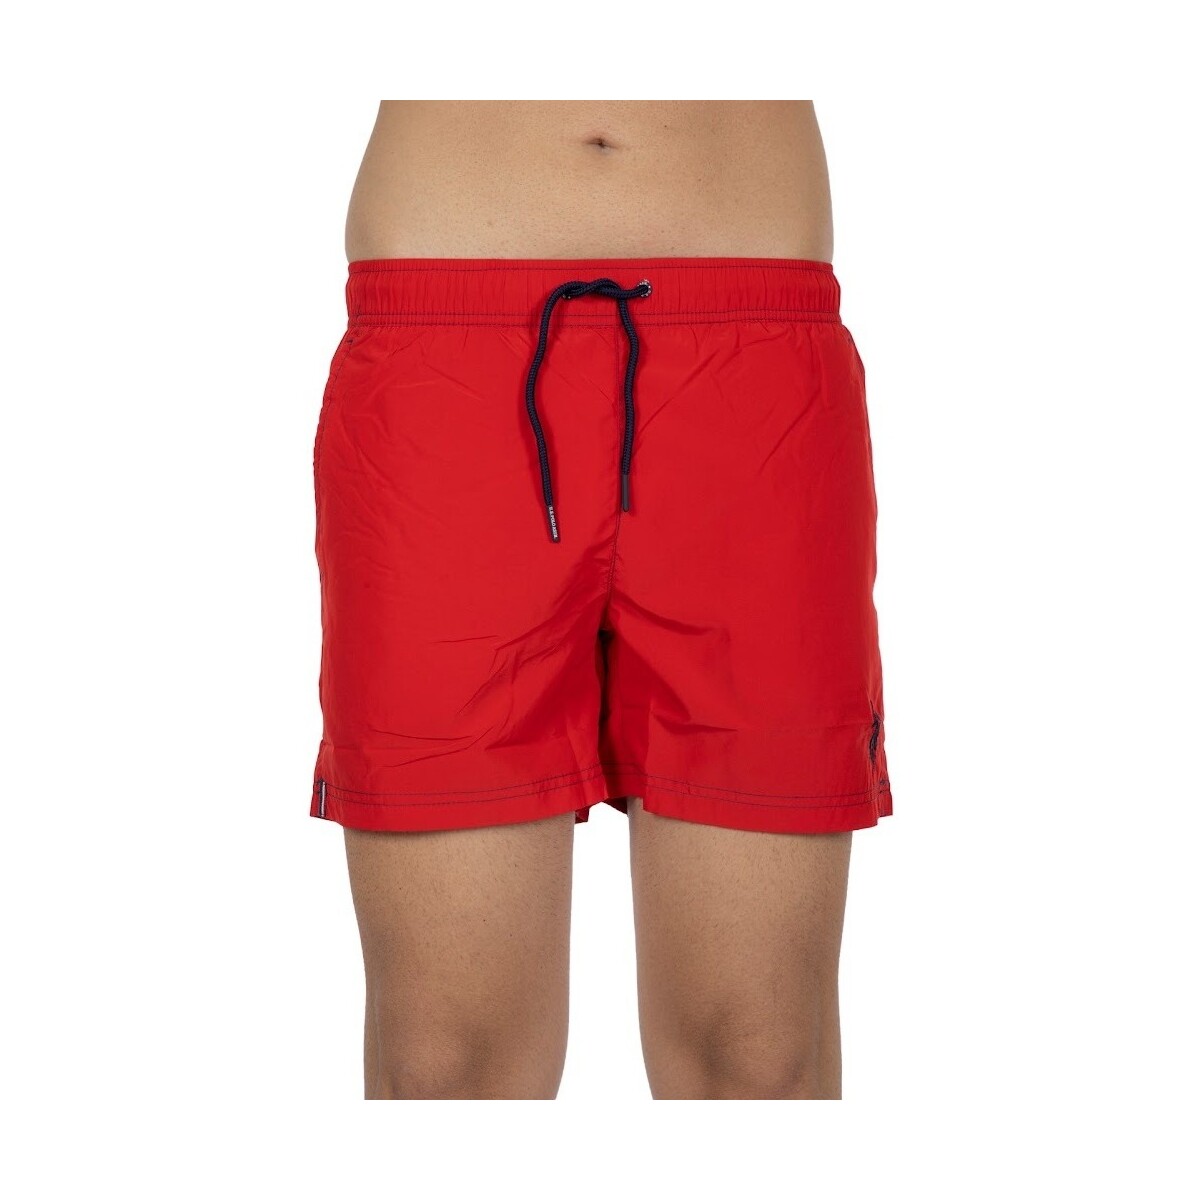 Vêtements Homme Maillots / Shorts de bain U.S Polo Assn. 140559-216471 Rouge